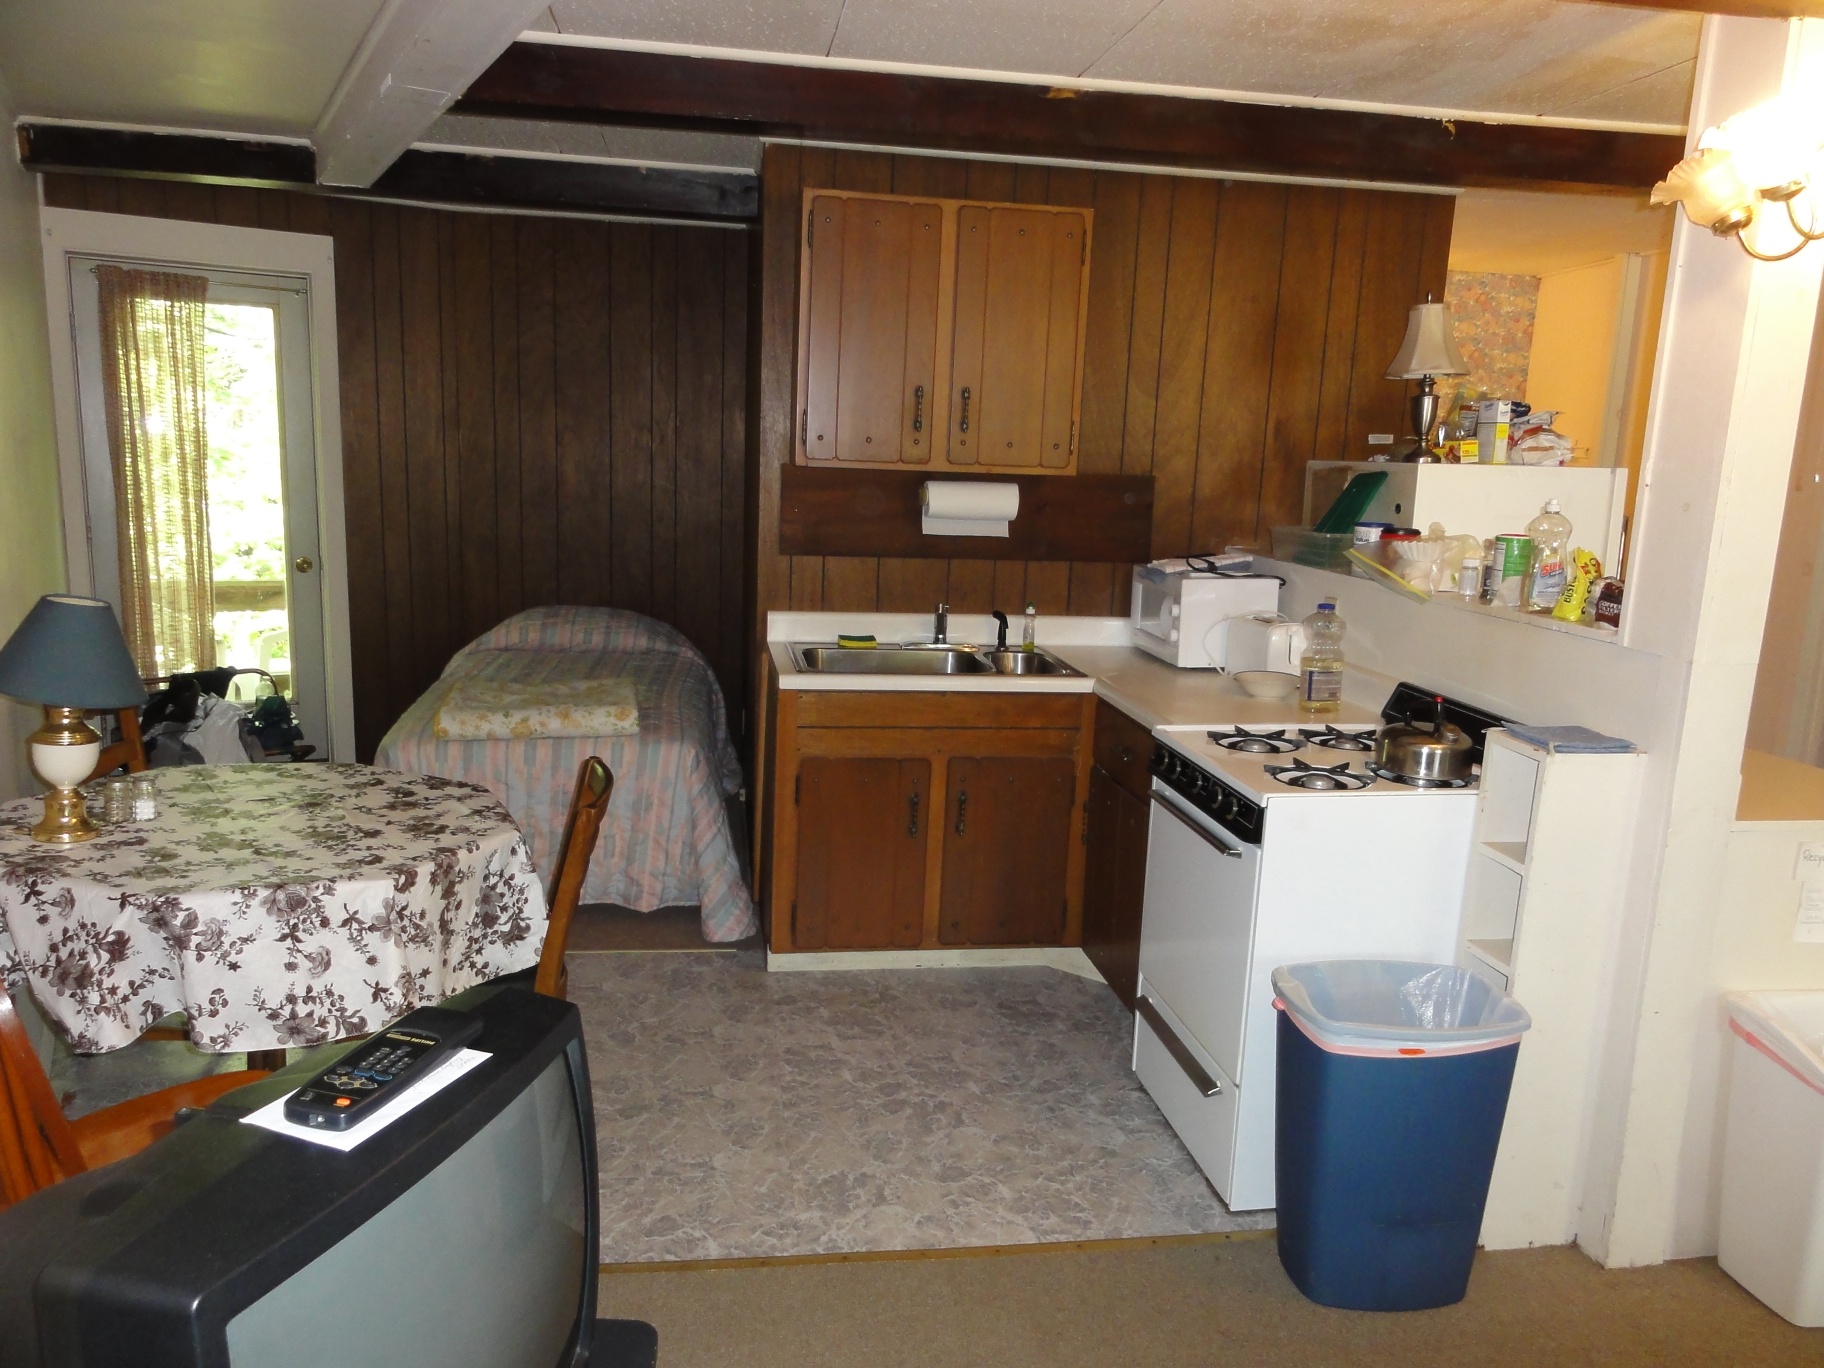 2 bedroom kitchen area